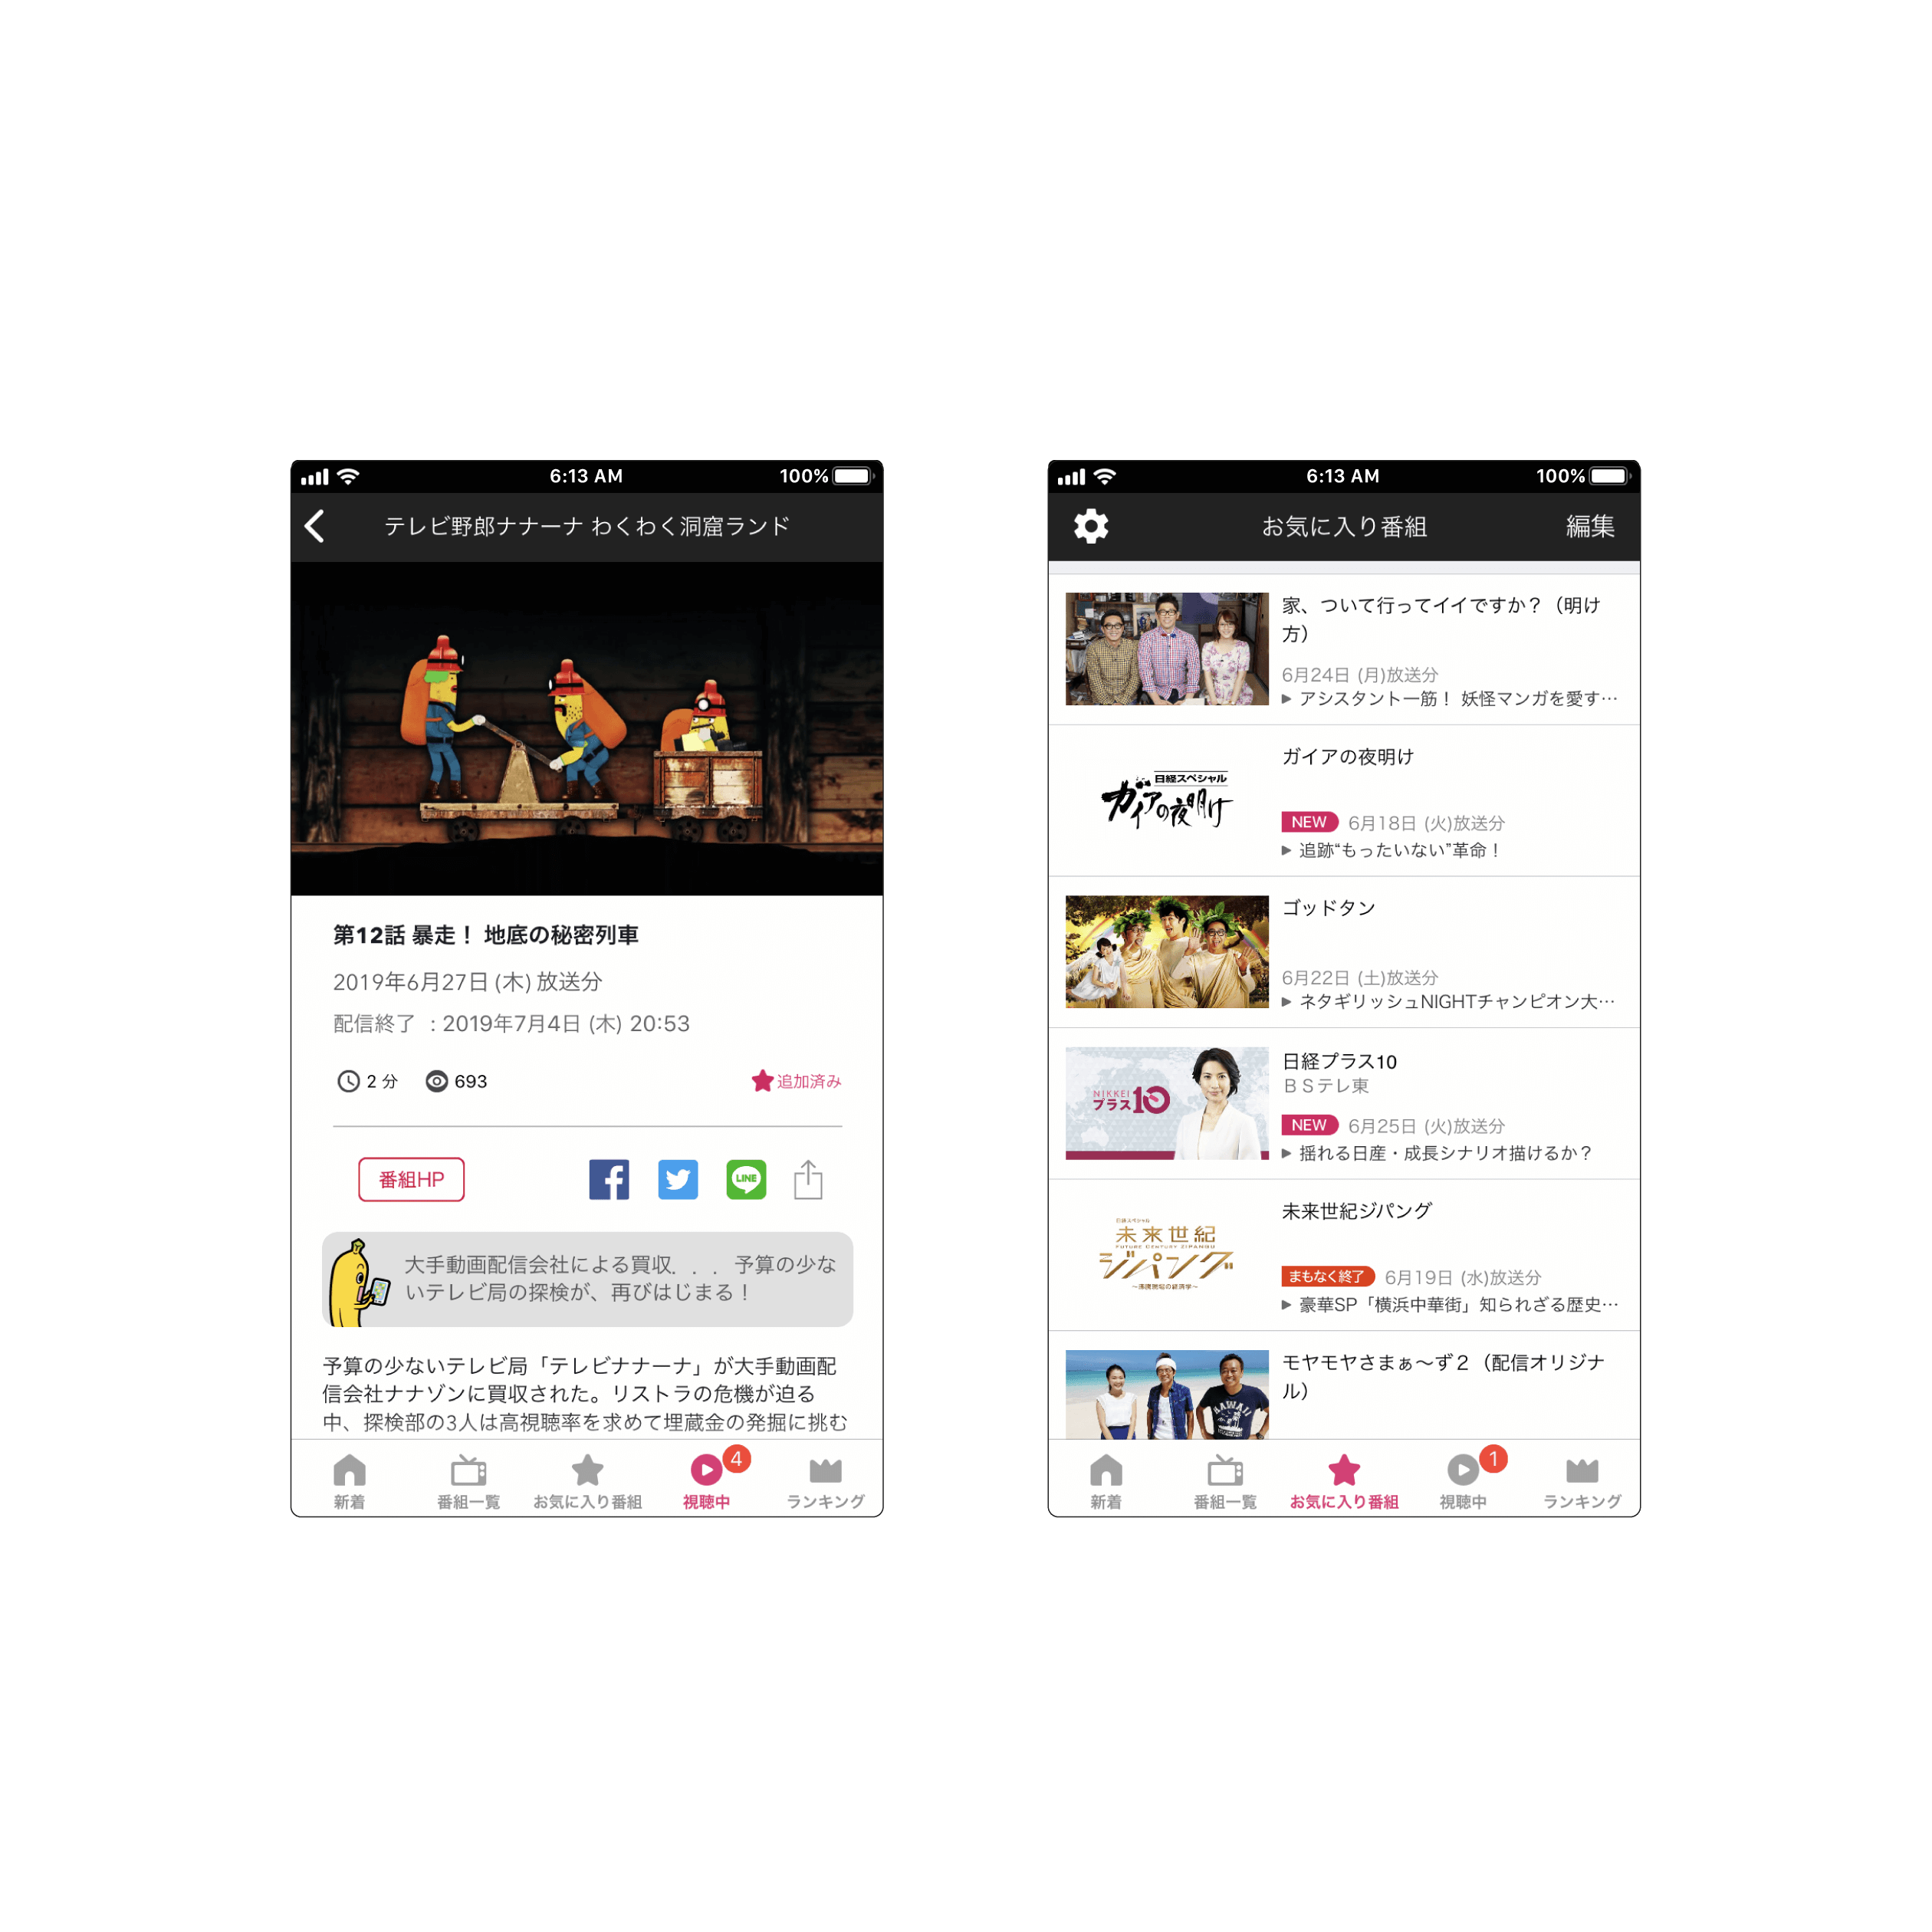 株式会社テレビ東京コミュニケーションズのスマホアプリ開発